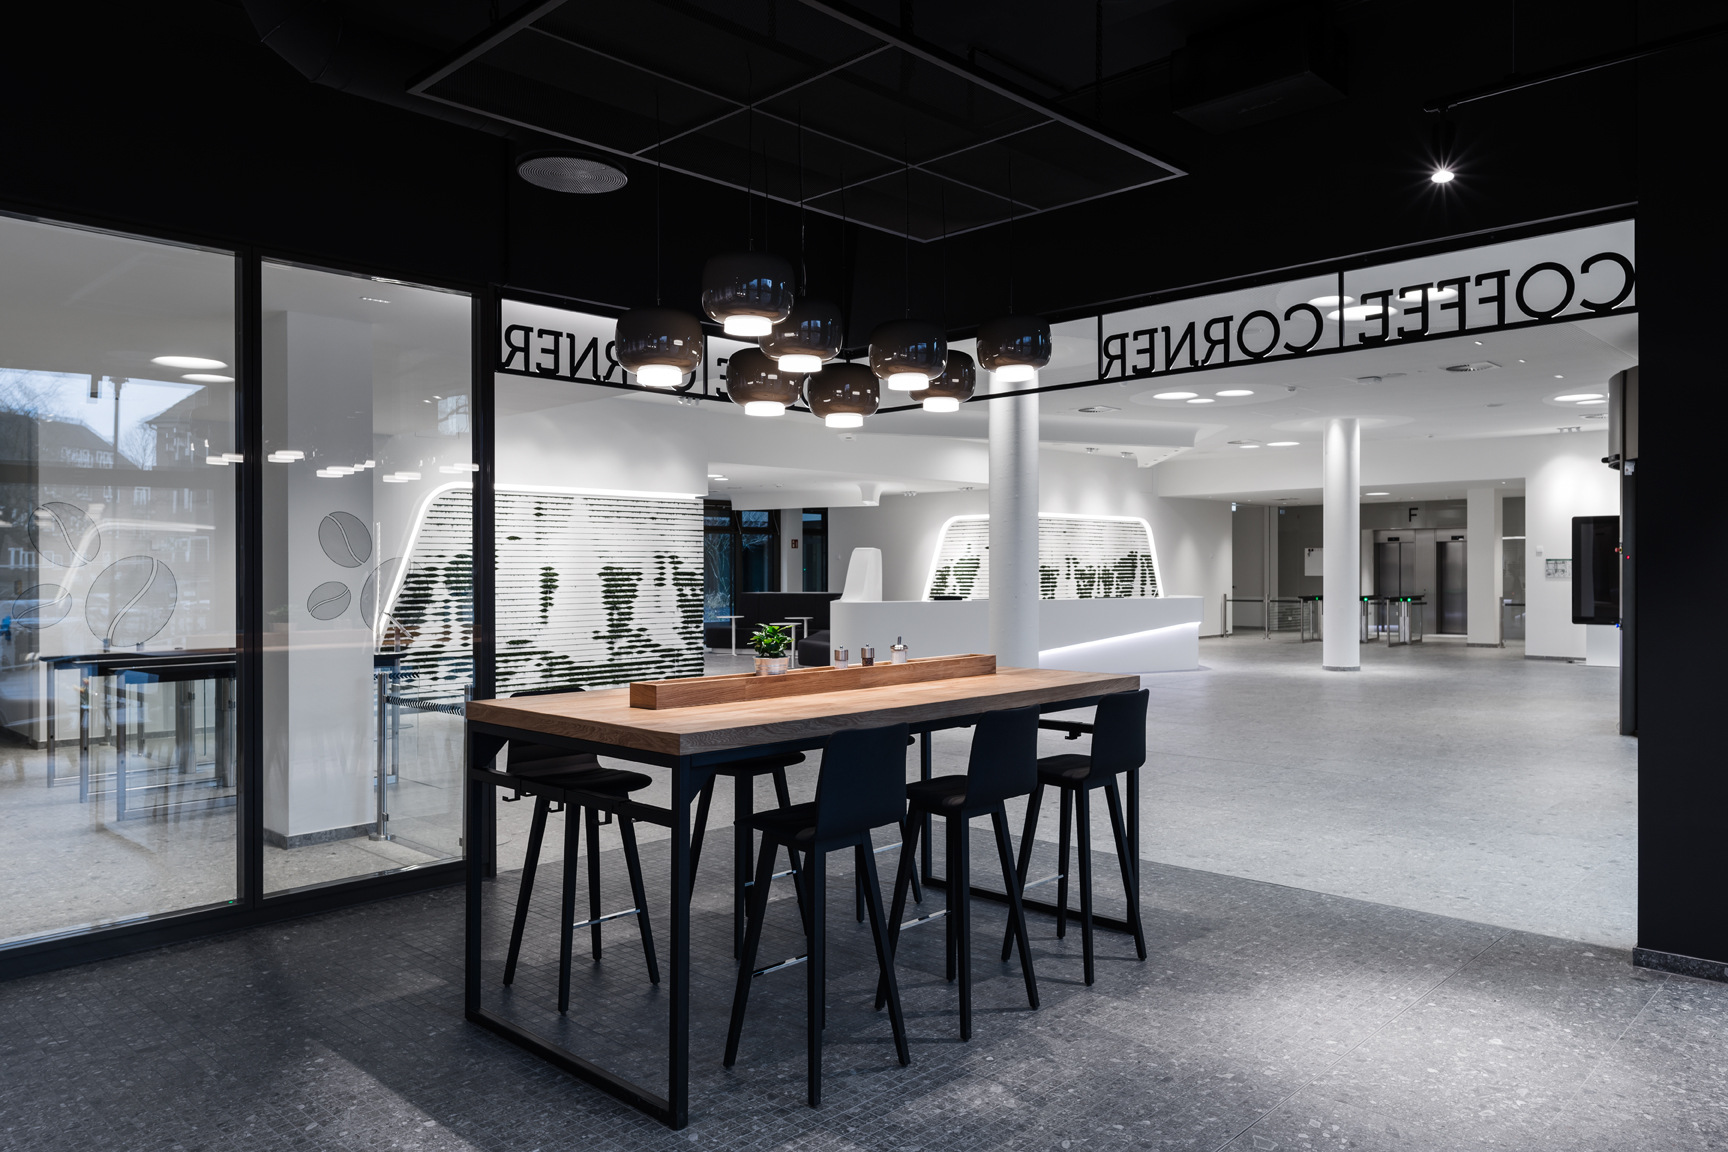 图片[9]|裕利安怡德国办事处-汉堡|ART-Arrakis | 建筑室内设计的创新与灵感